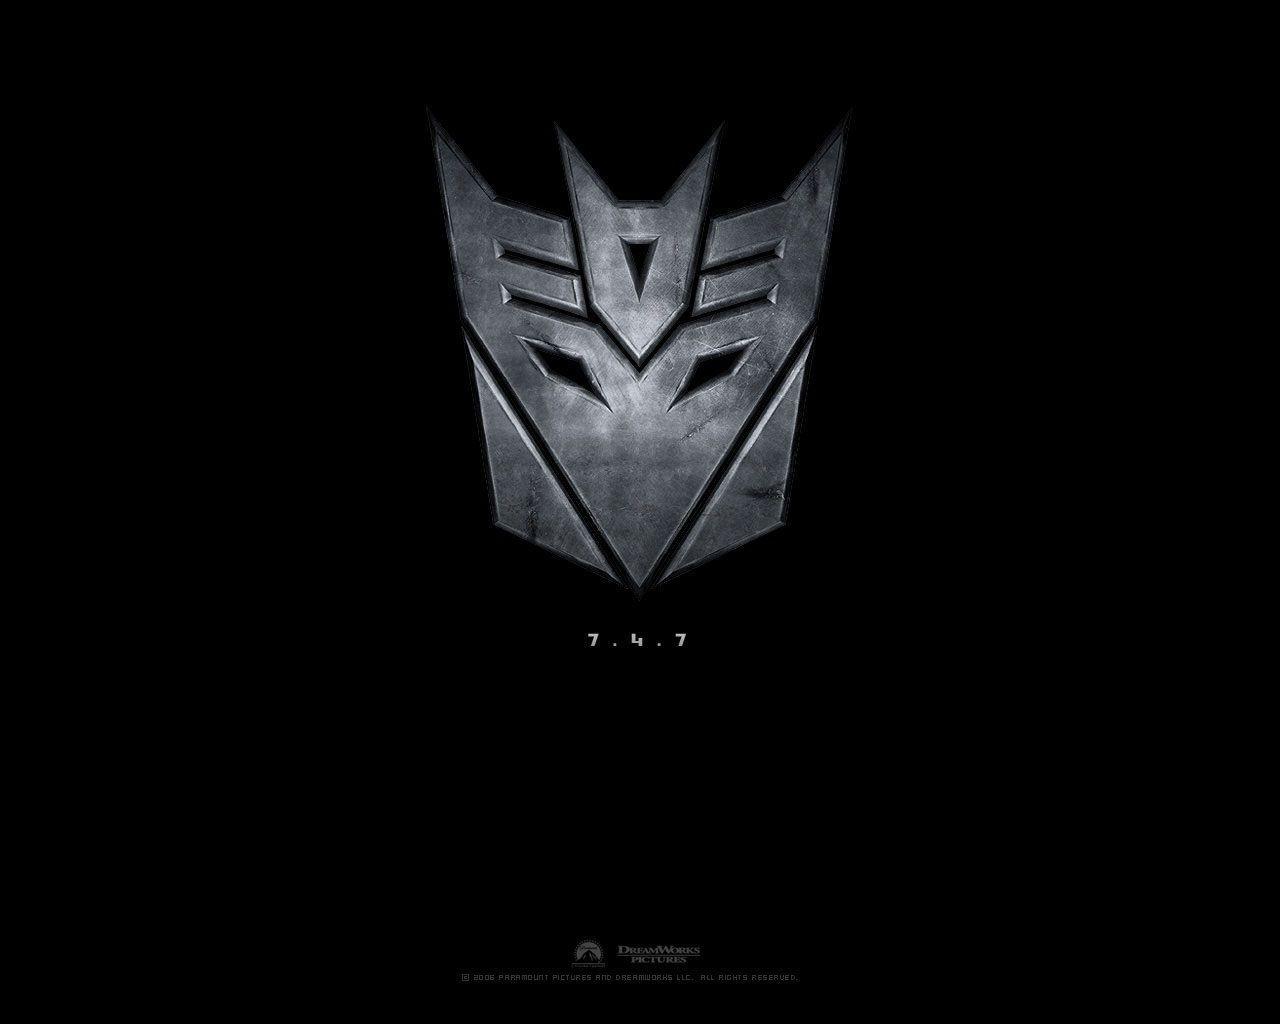 Transformers Decepticons Wallpaper